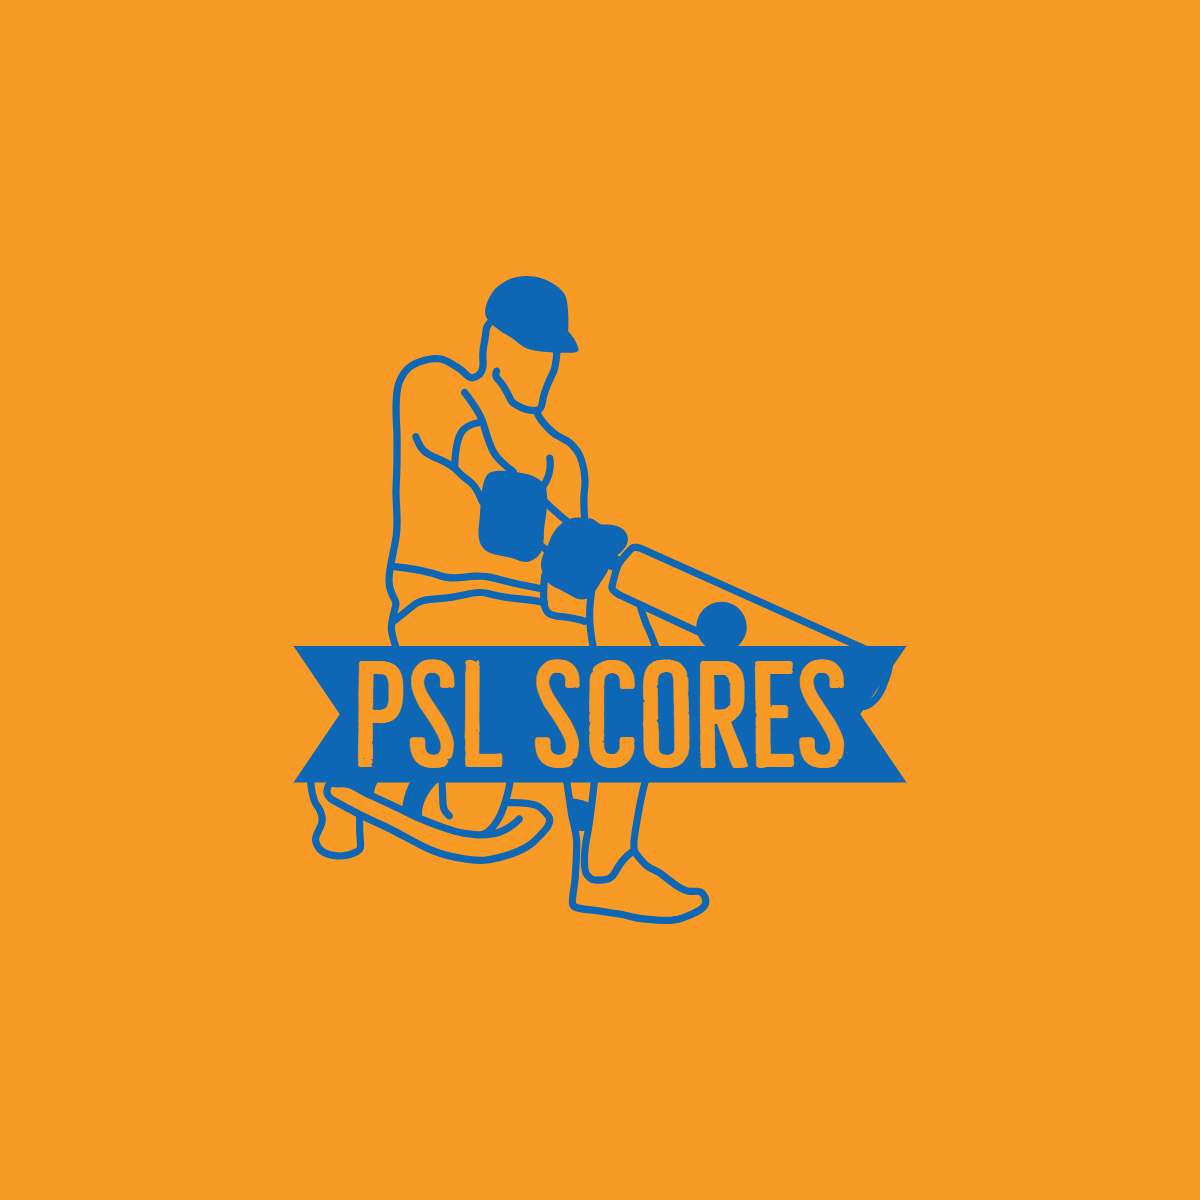 Psl Scores